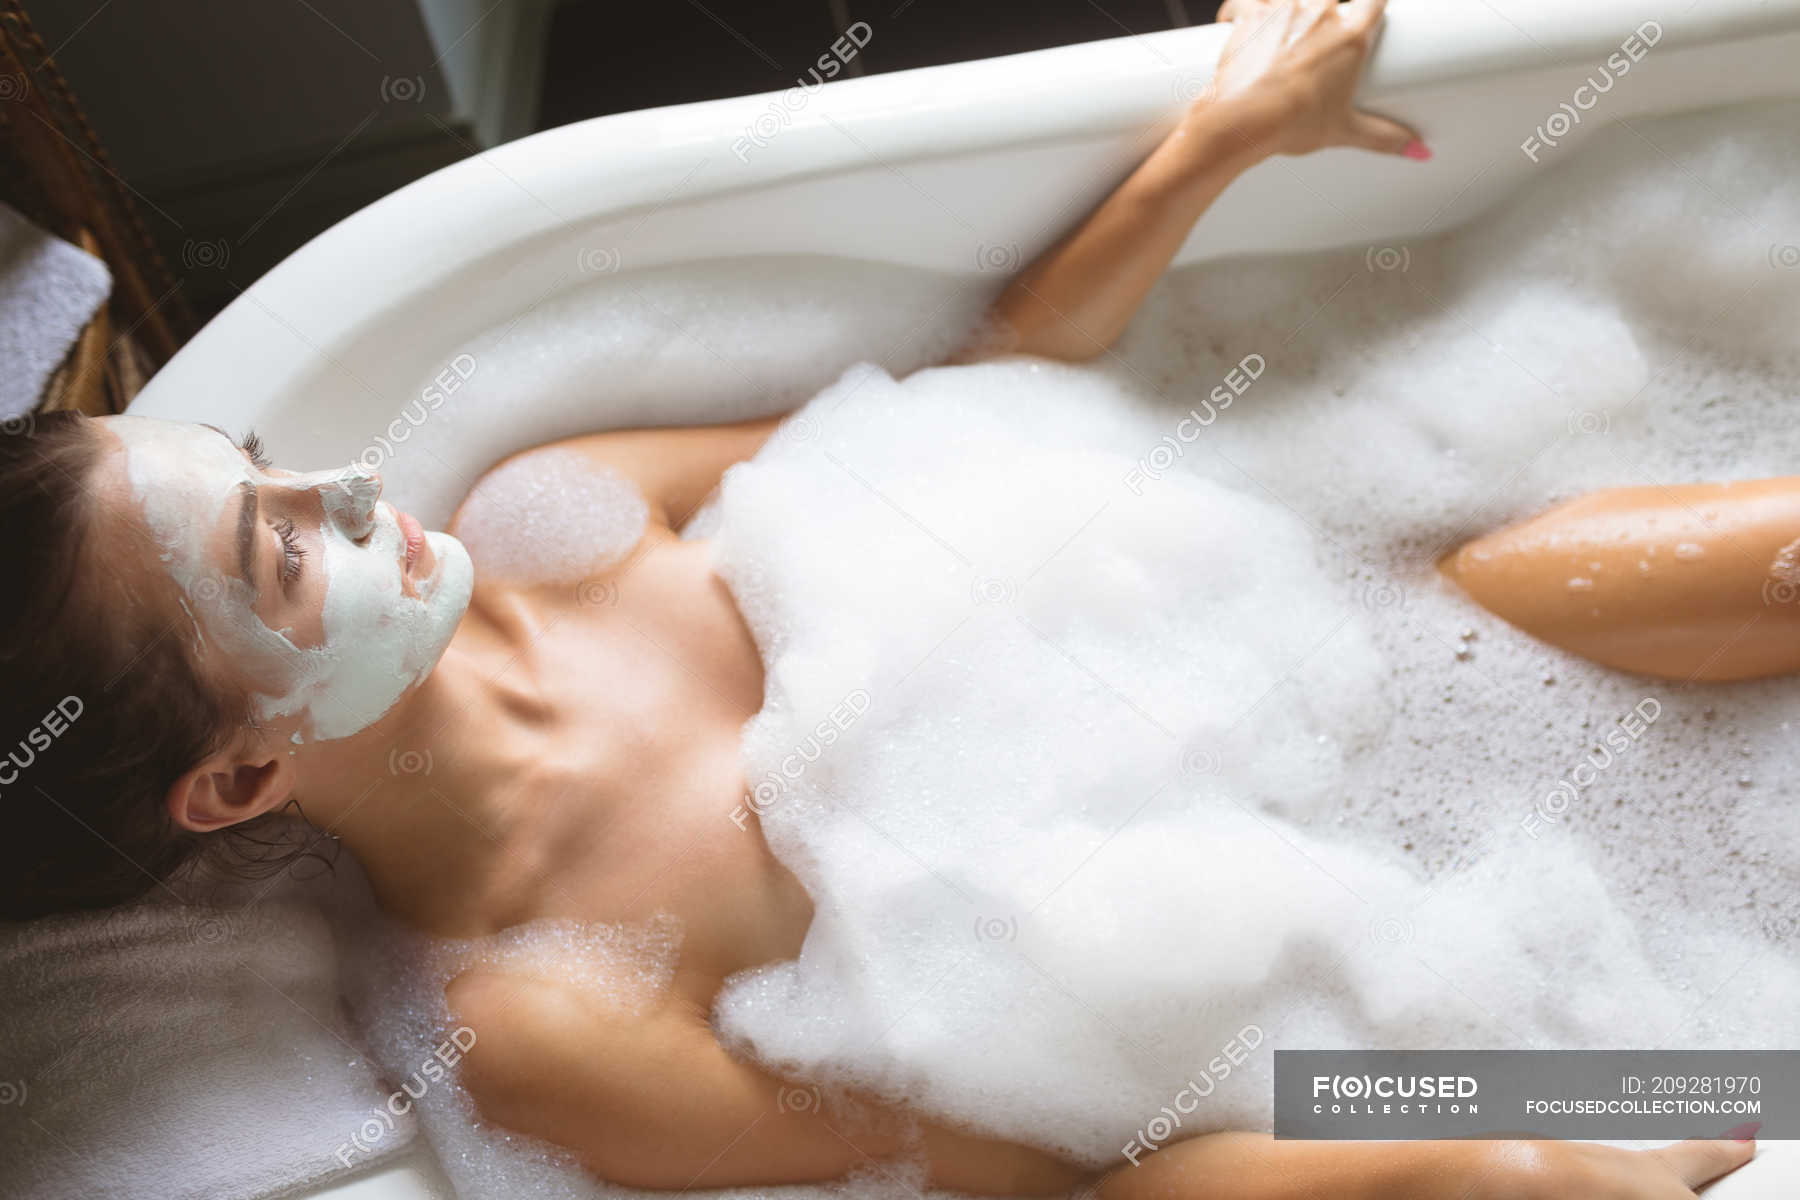 Чувственные фото девушки в ванне джакузи